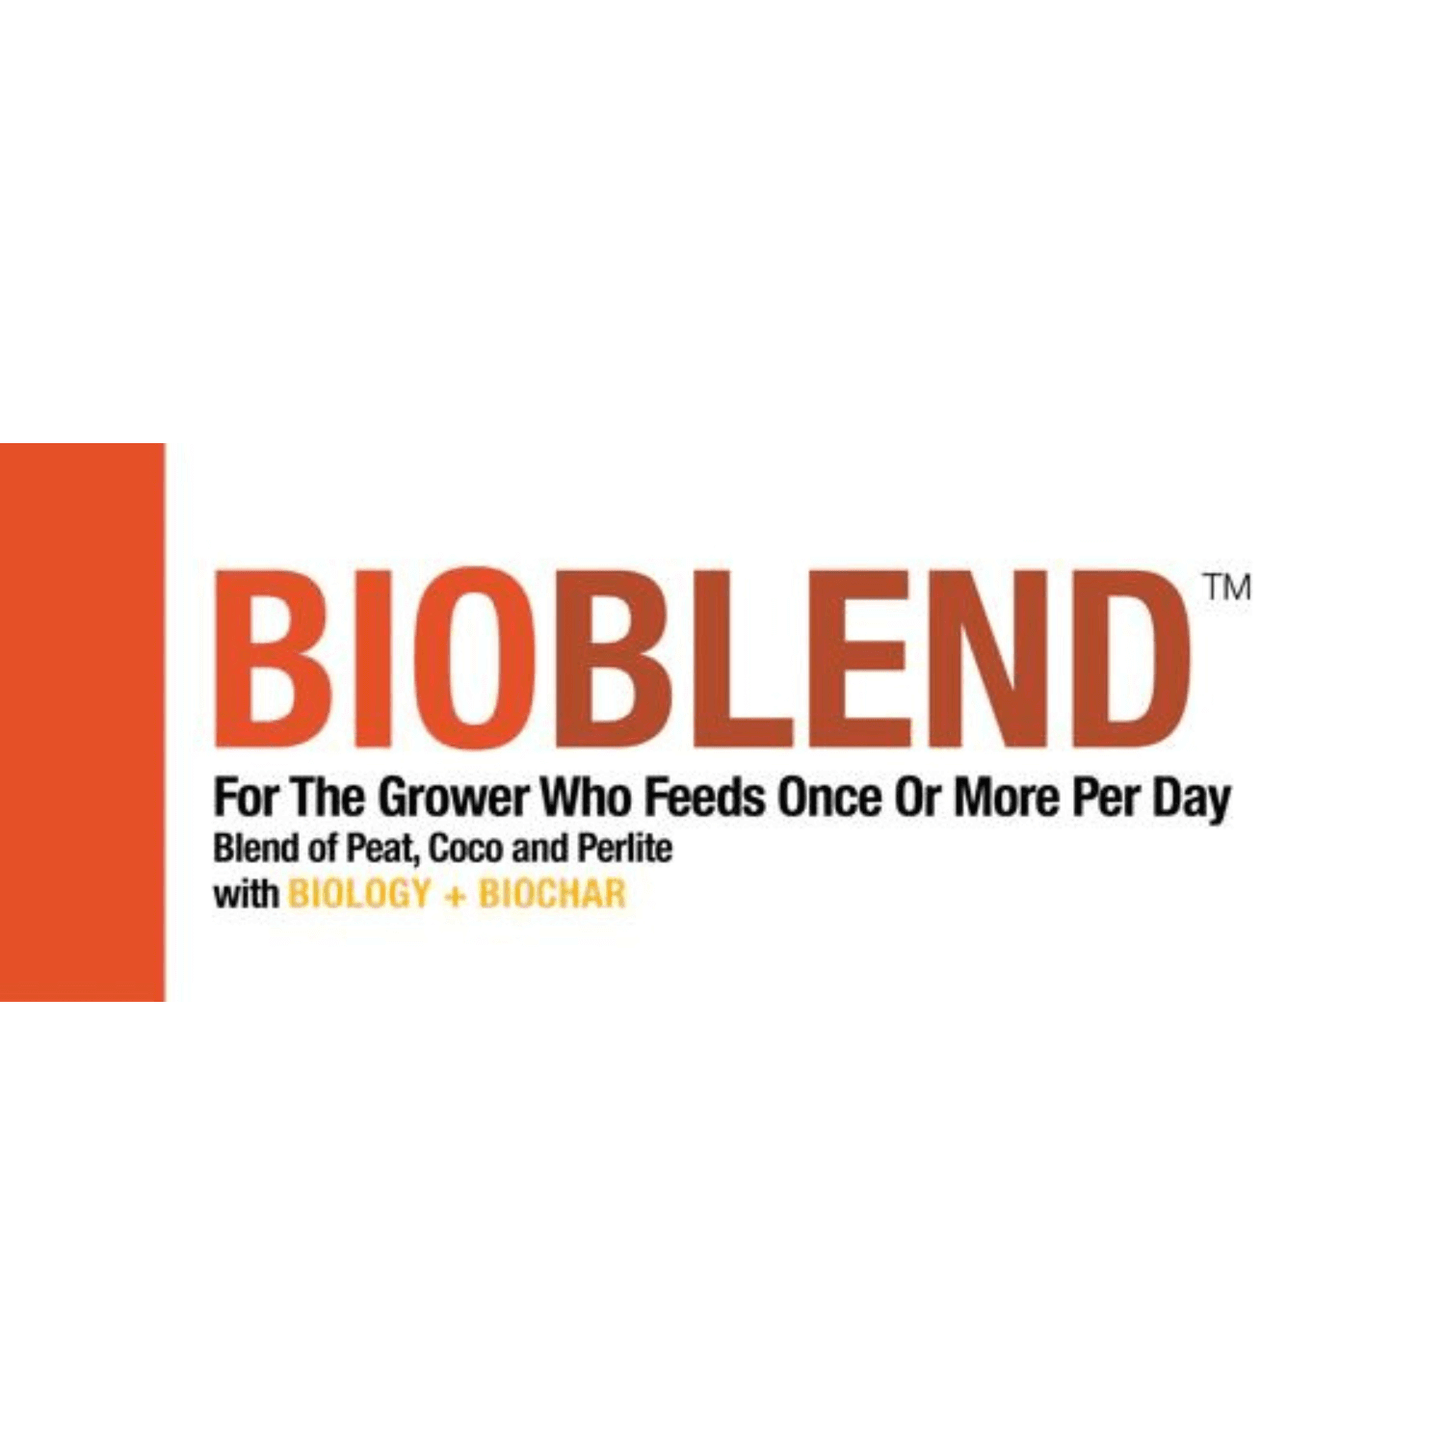 bio365 BIOBLEND 1.5cu ft Blend of Fine Coir, Coarse Peat, and Super Coarse Perlite CP015001 Planting & Watering 850018264020